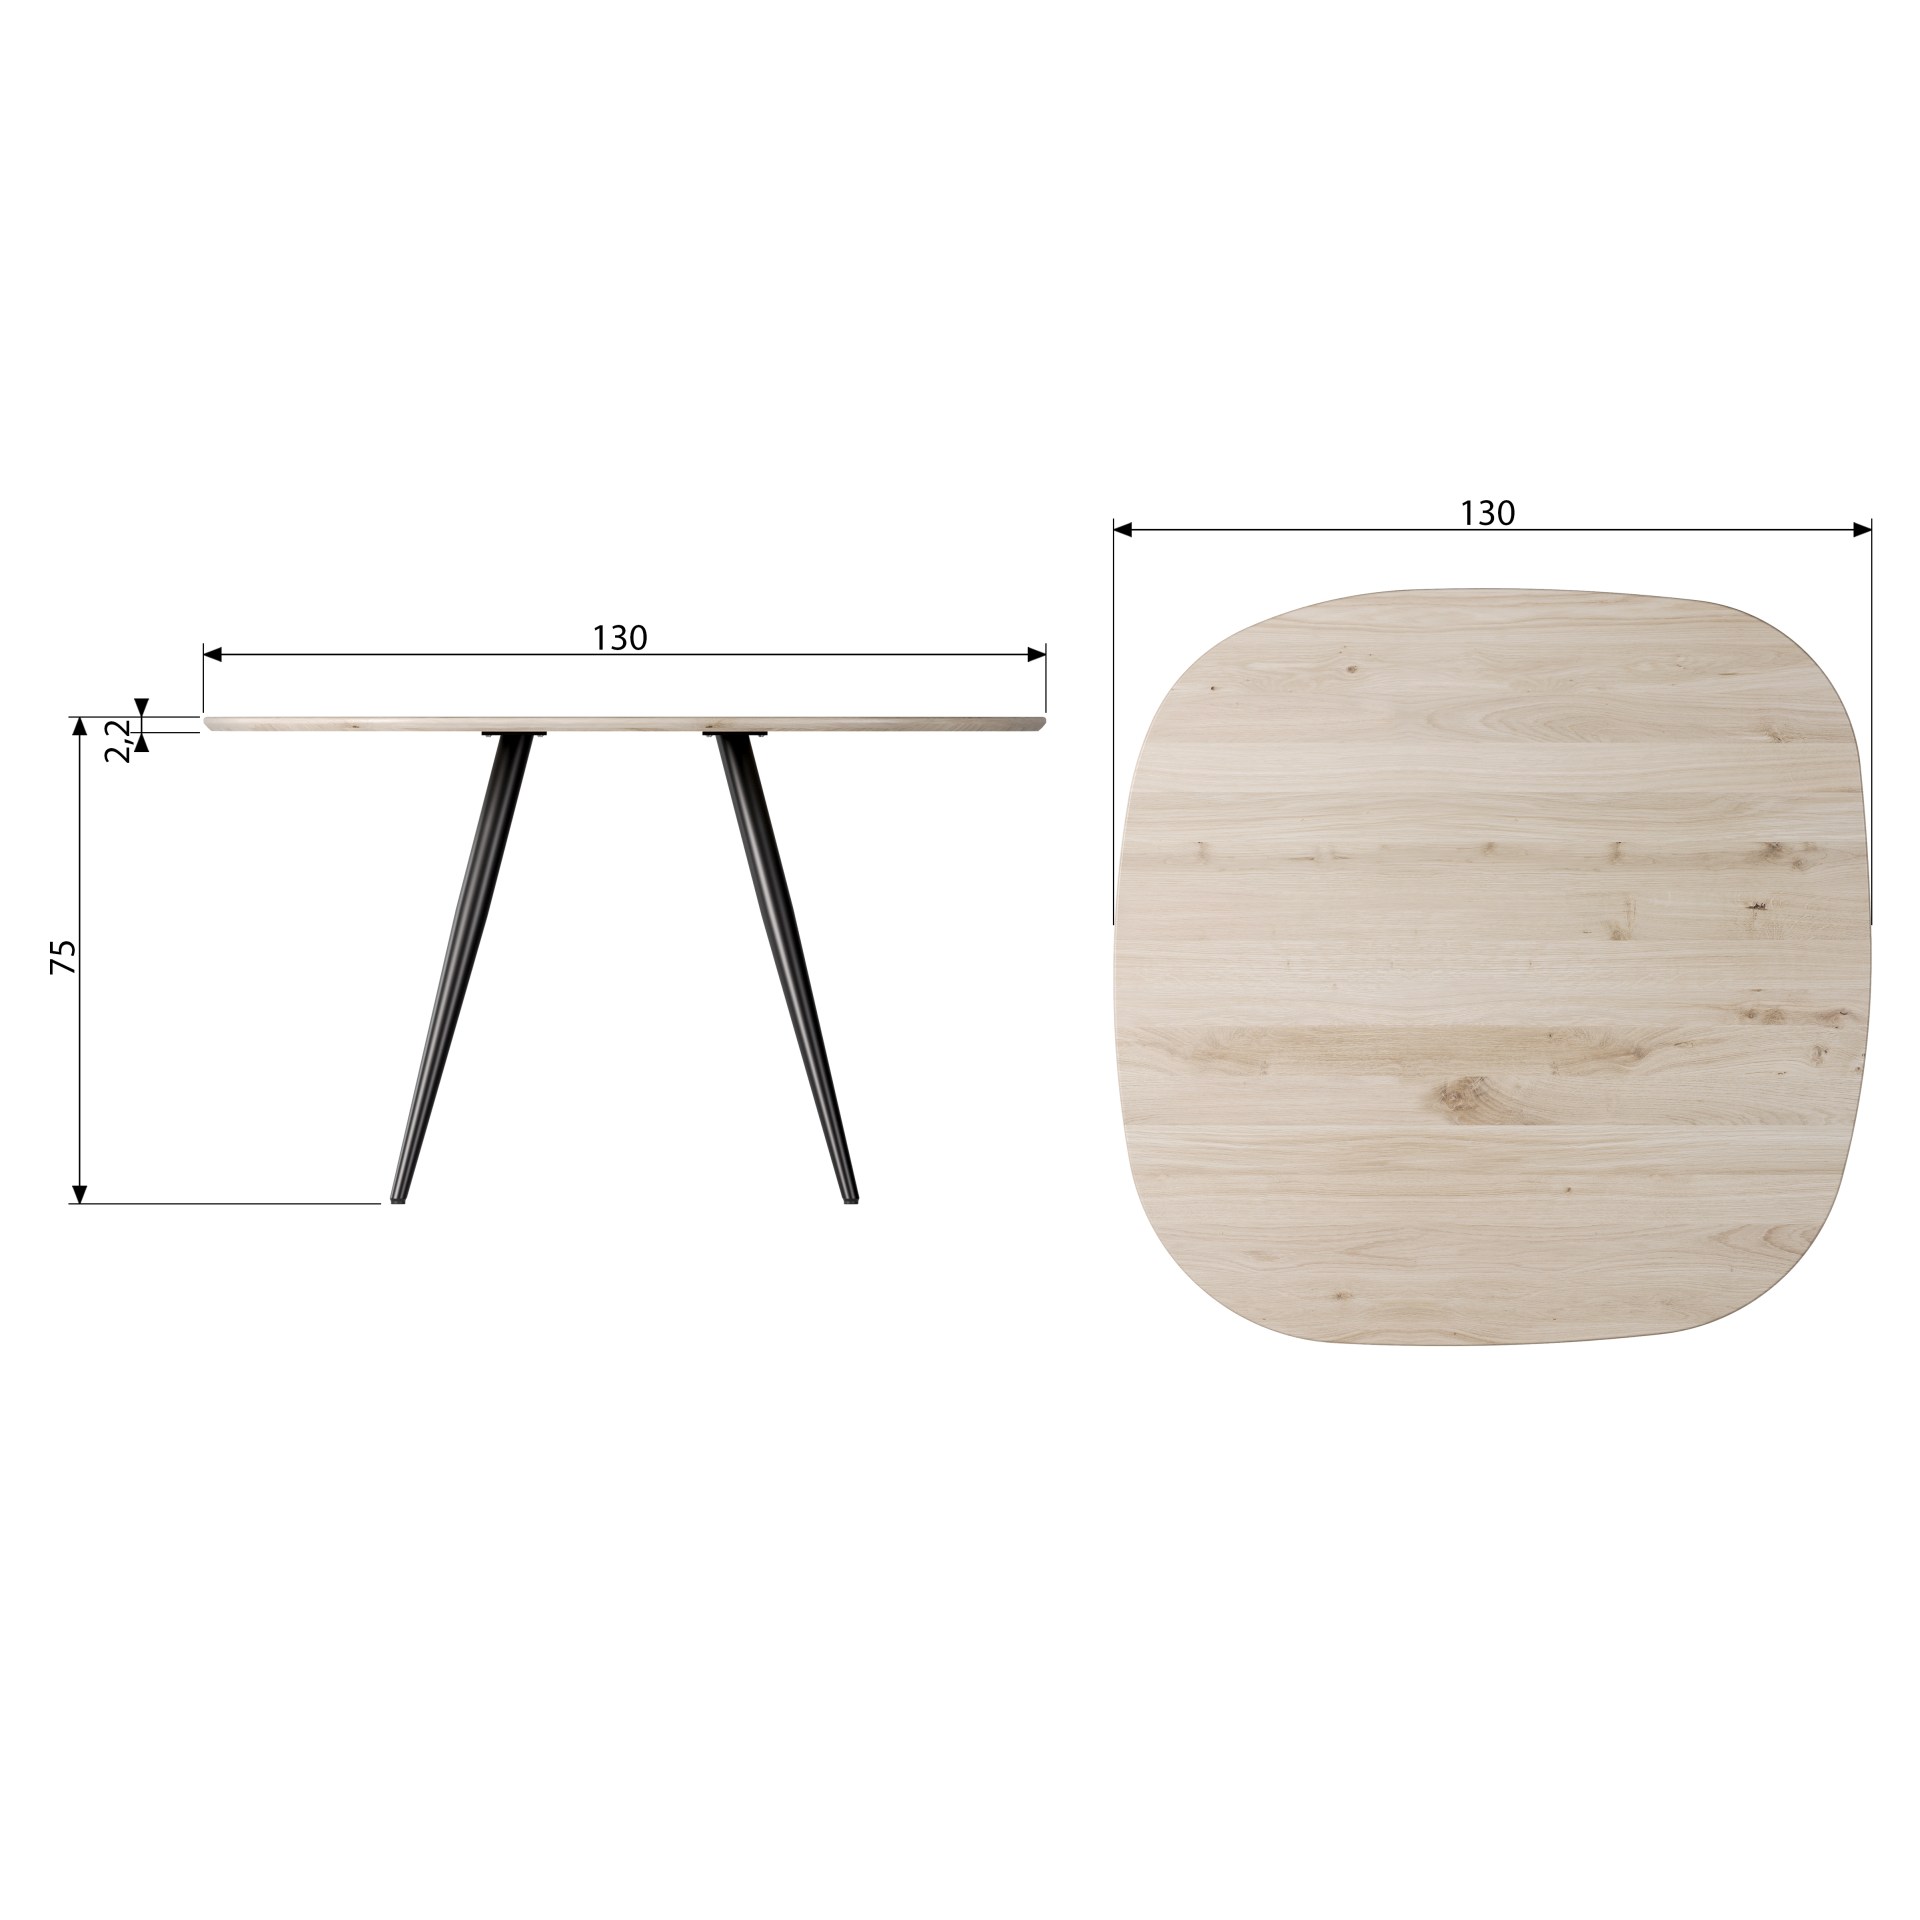 Der Esstisch Tablo überzeugt mit seiner besonderen Form. Gefertigt wurde der Tisch aus Eichenholz, durch die Verwendung von Eichenholz Beinen entsteht ein besonderes Design.